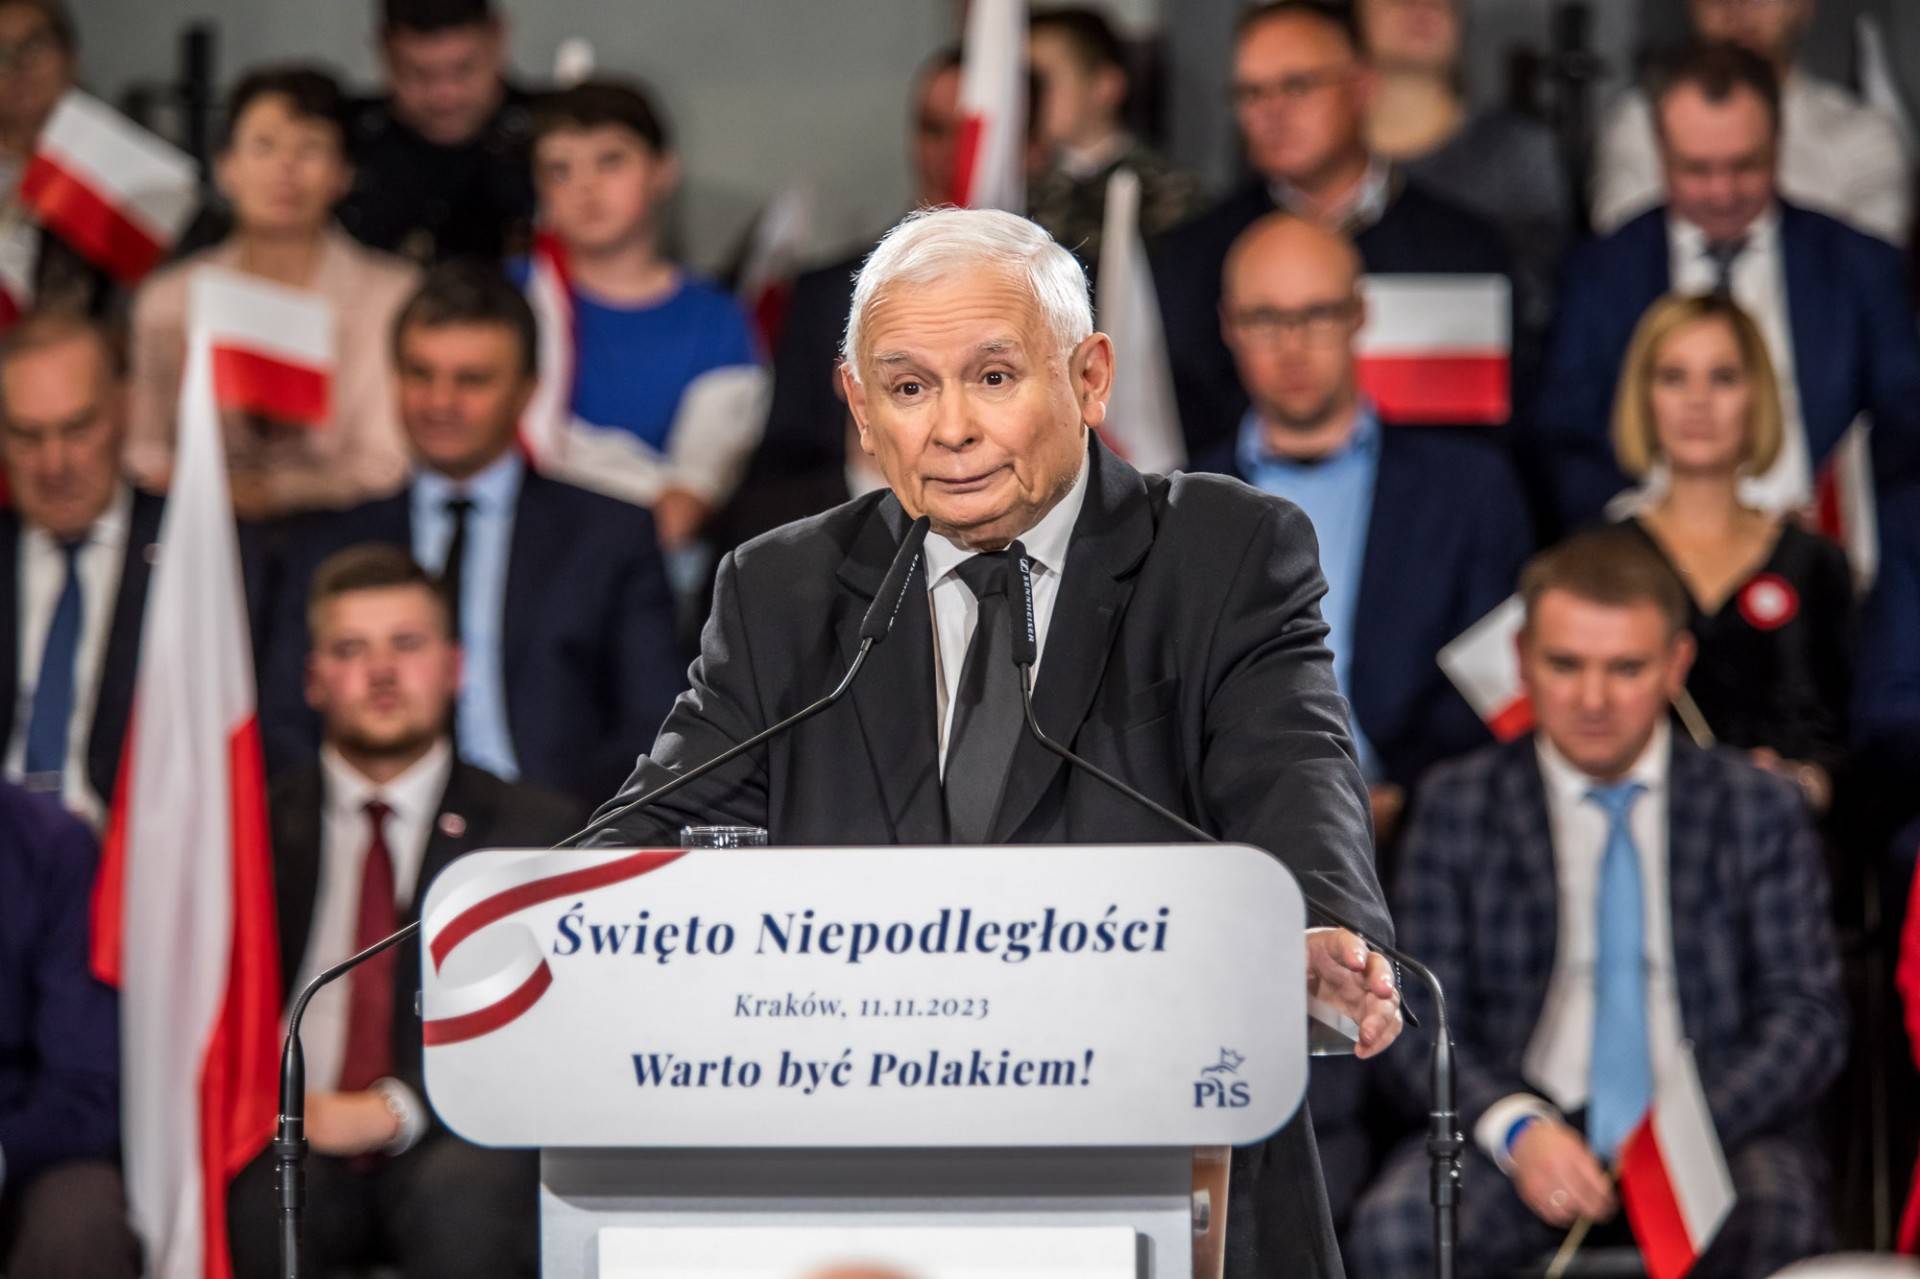 Kaczyński w Krakowie: "Cierpieć i umierać za ojczyznę to rzecz piękna"